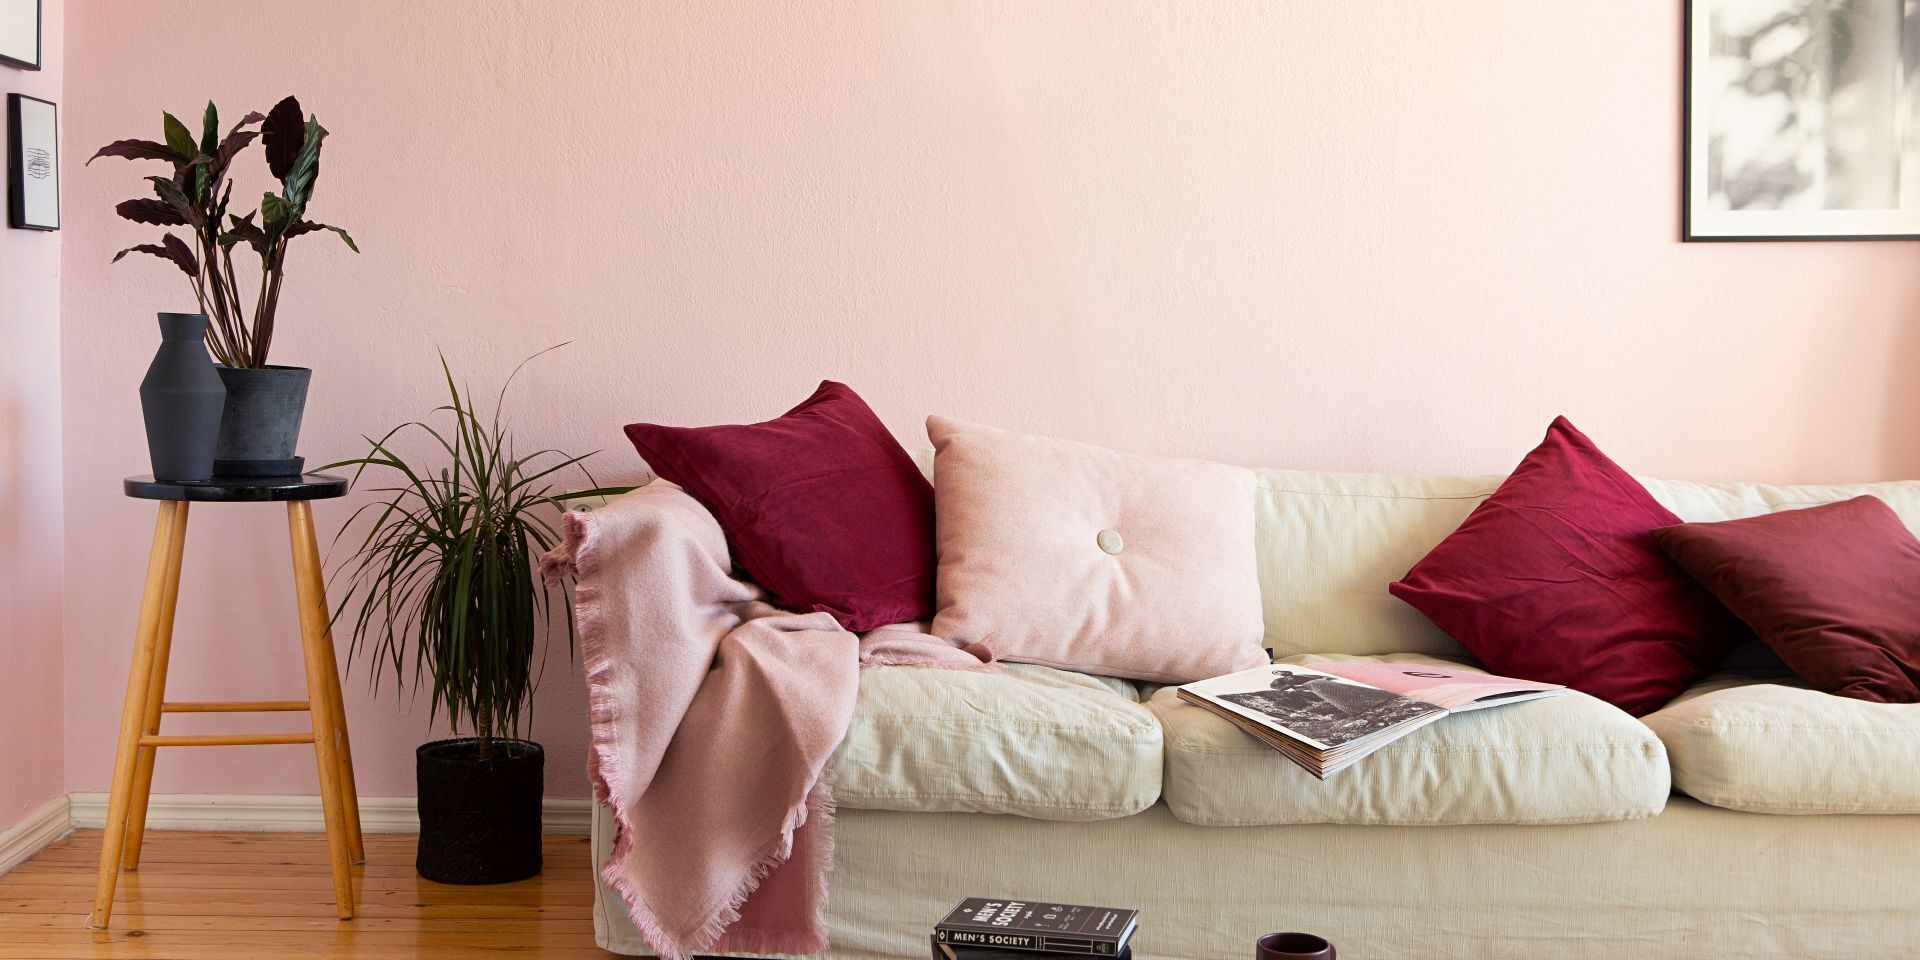 Vaaleanpunaiseksi maalattu olohuone ja vaalea sohva